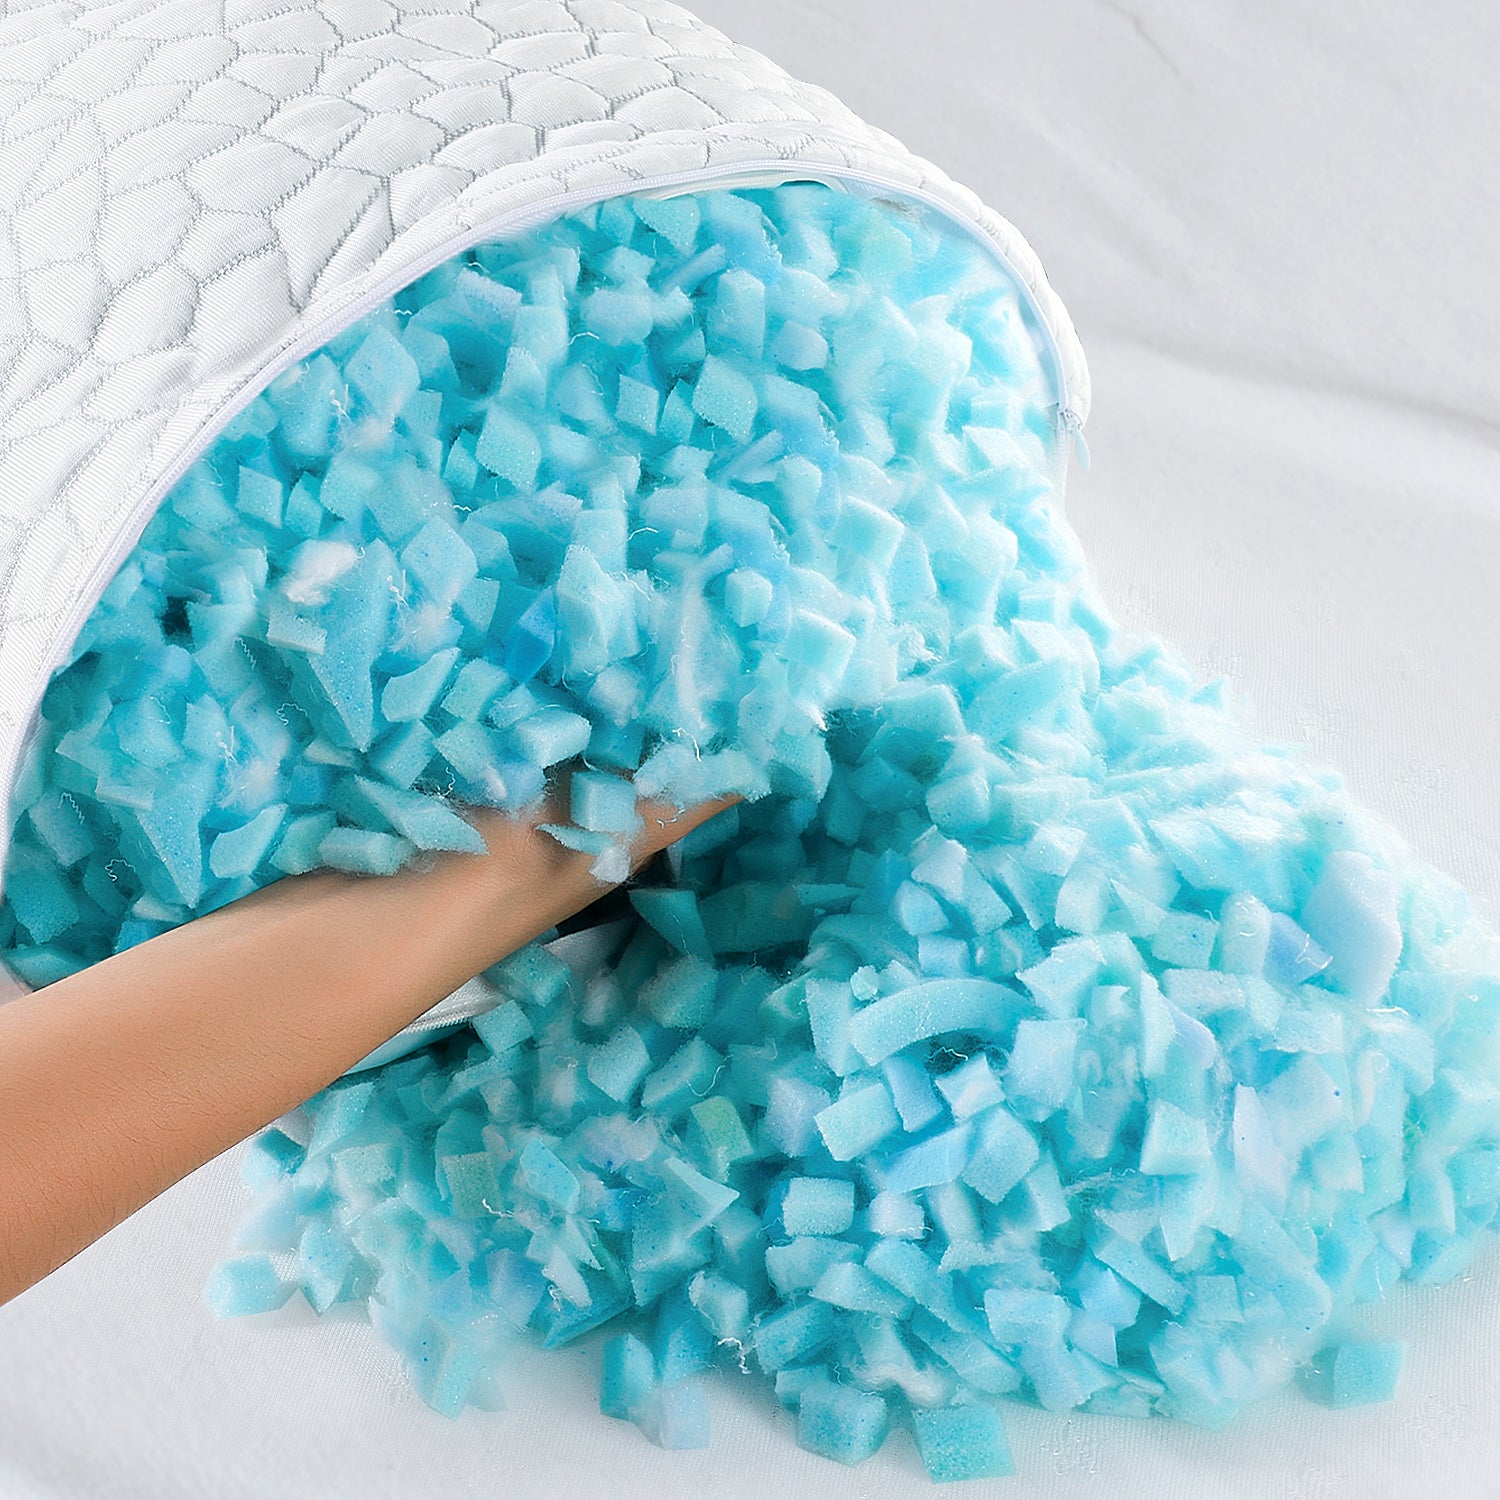 Shredded Memory Foam Pillow I Gel Memory Foam Pillow I Adjustable